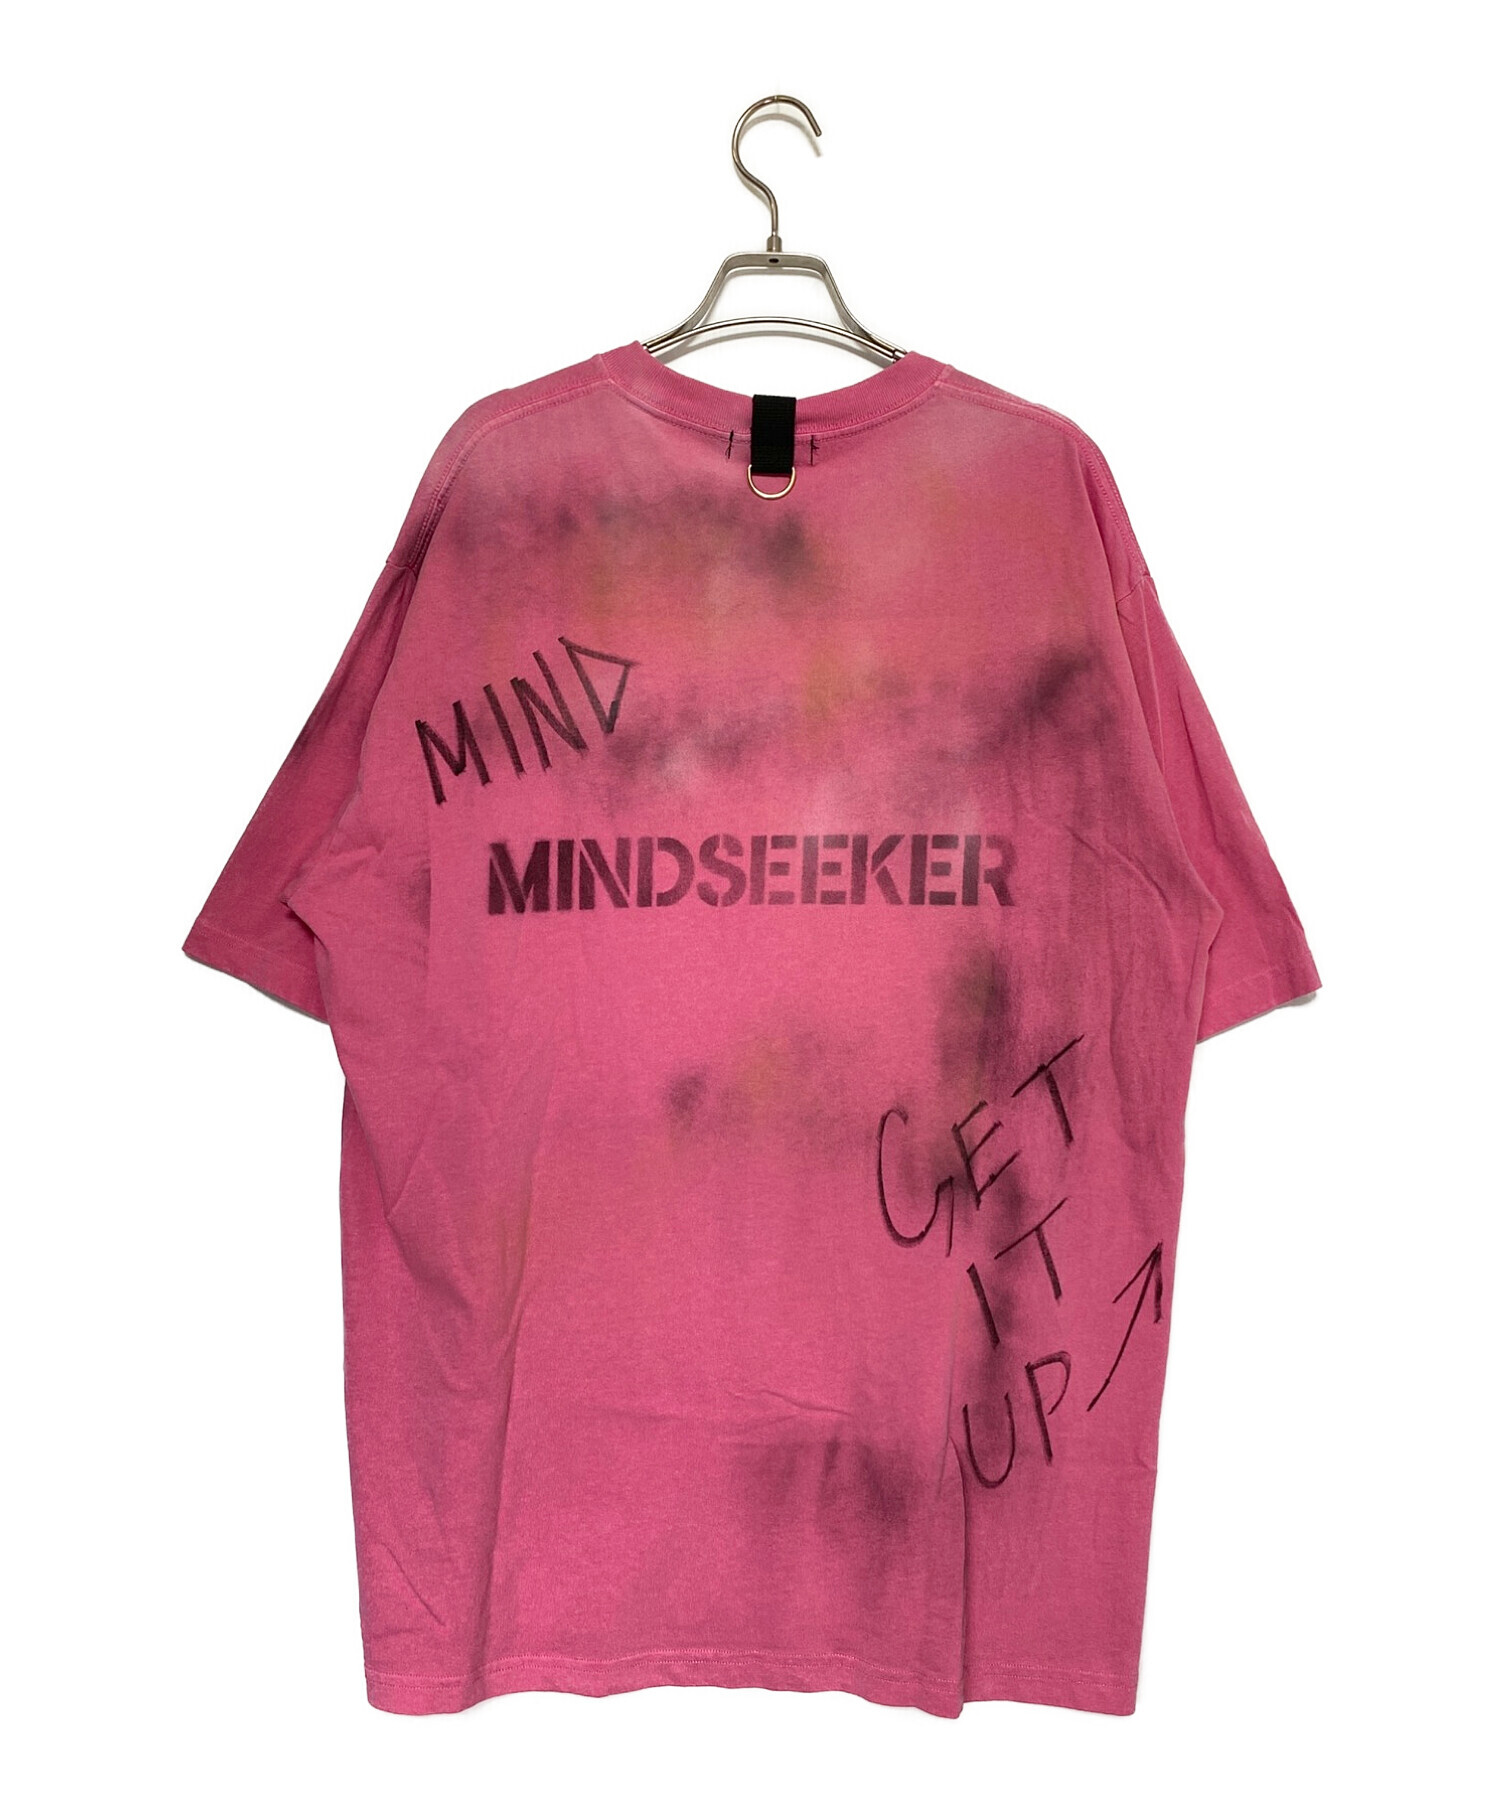 MINDSEEKER (マインドシーカー) HAND GRAFFITI STENCIL TEE ピンク サイズ:XXL